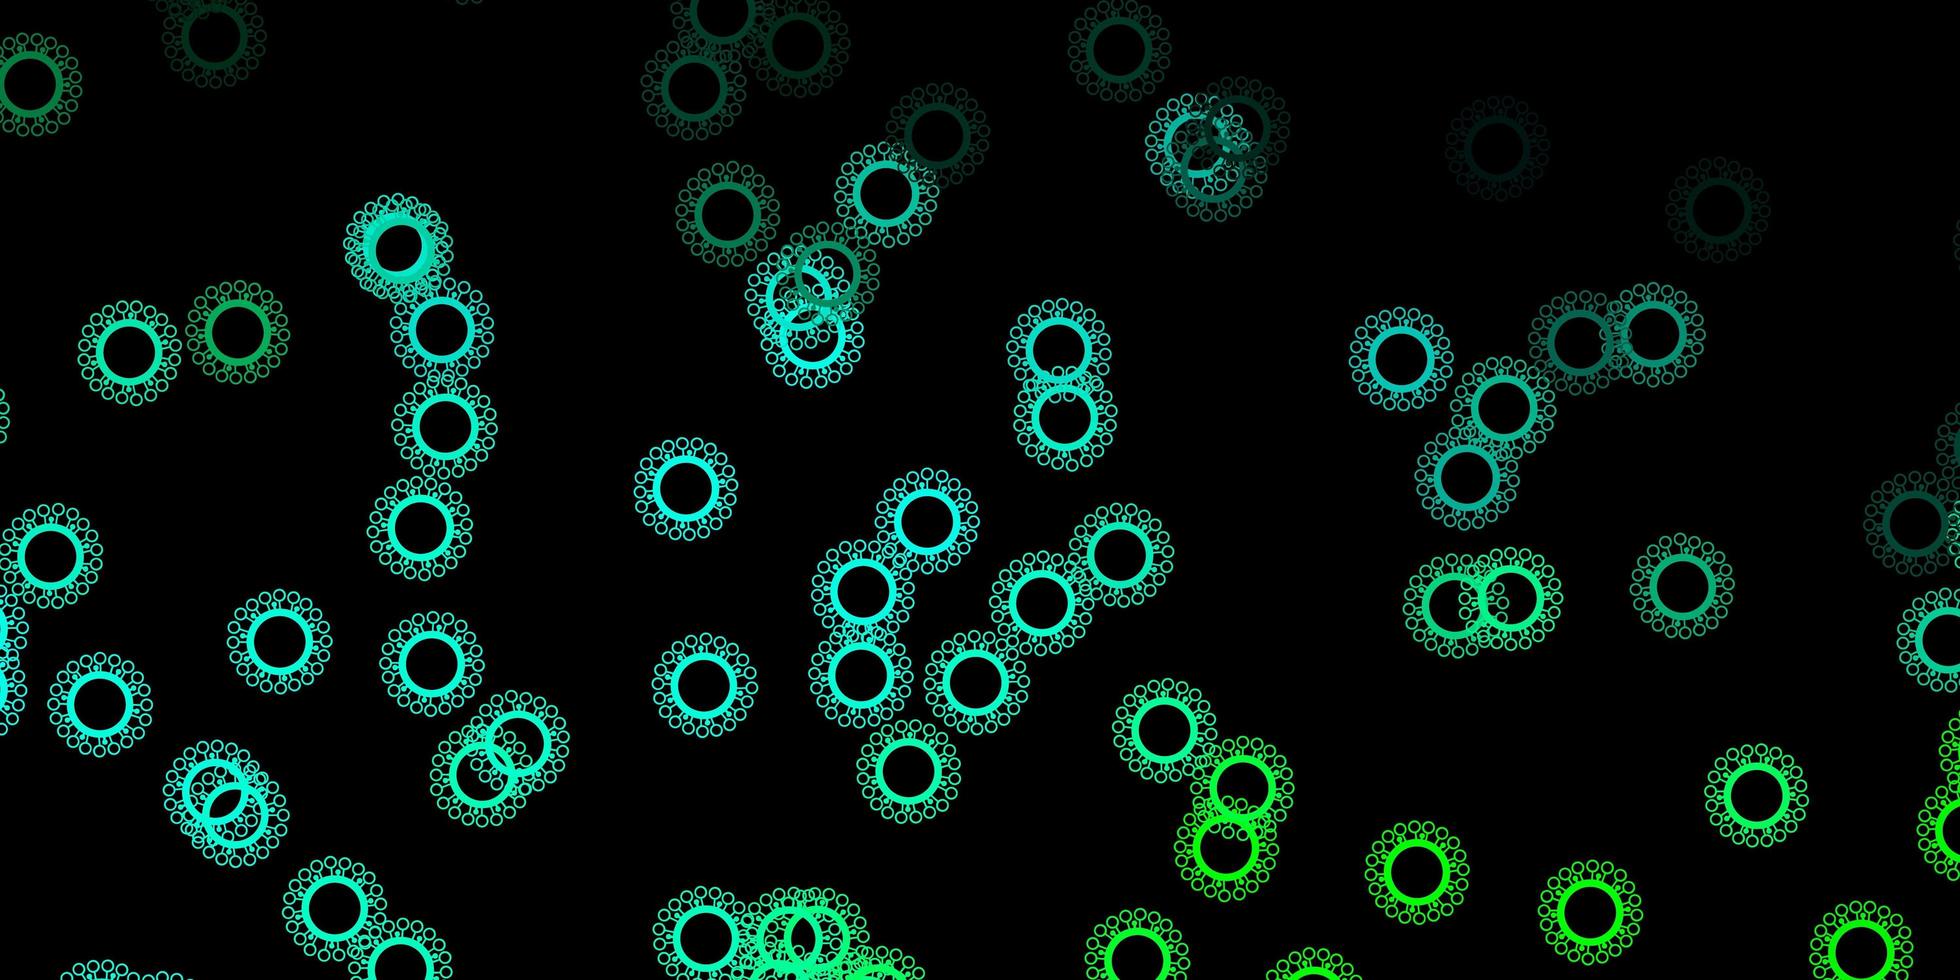 pano de fundo vector verde escuro com símbolos de vírus.